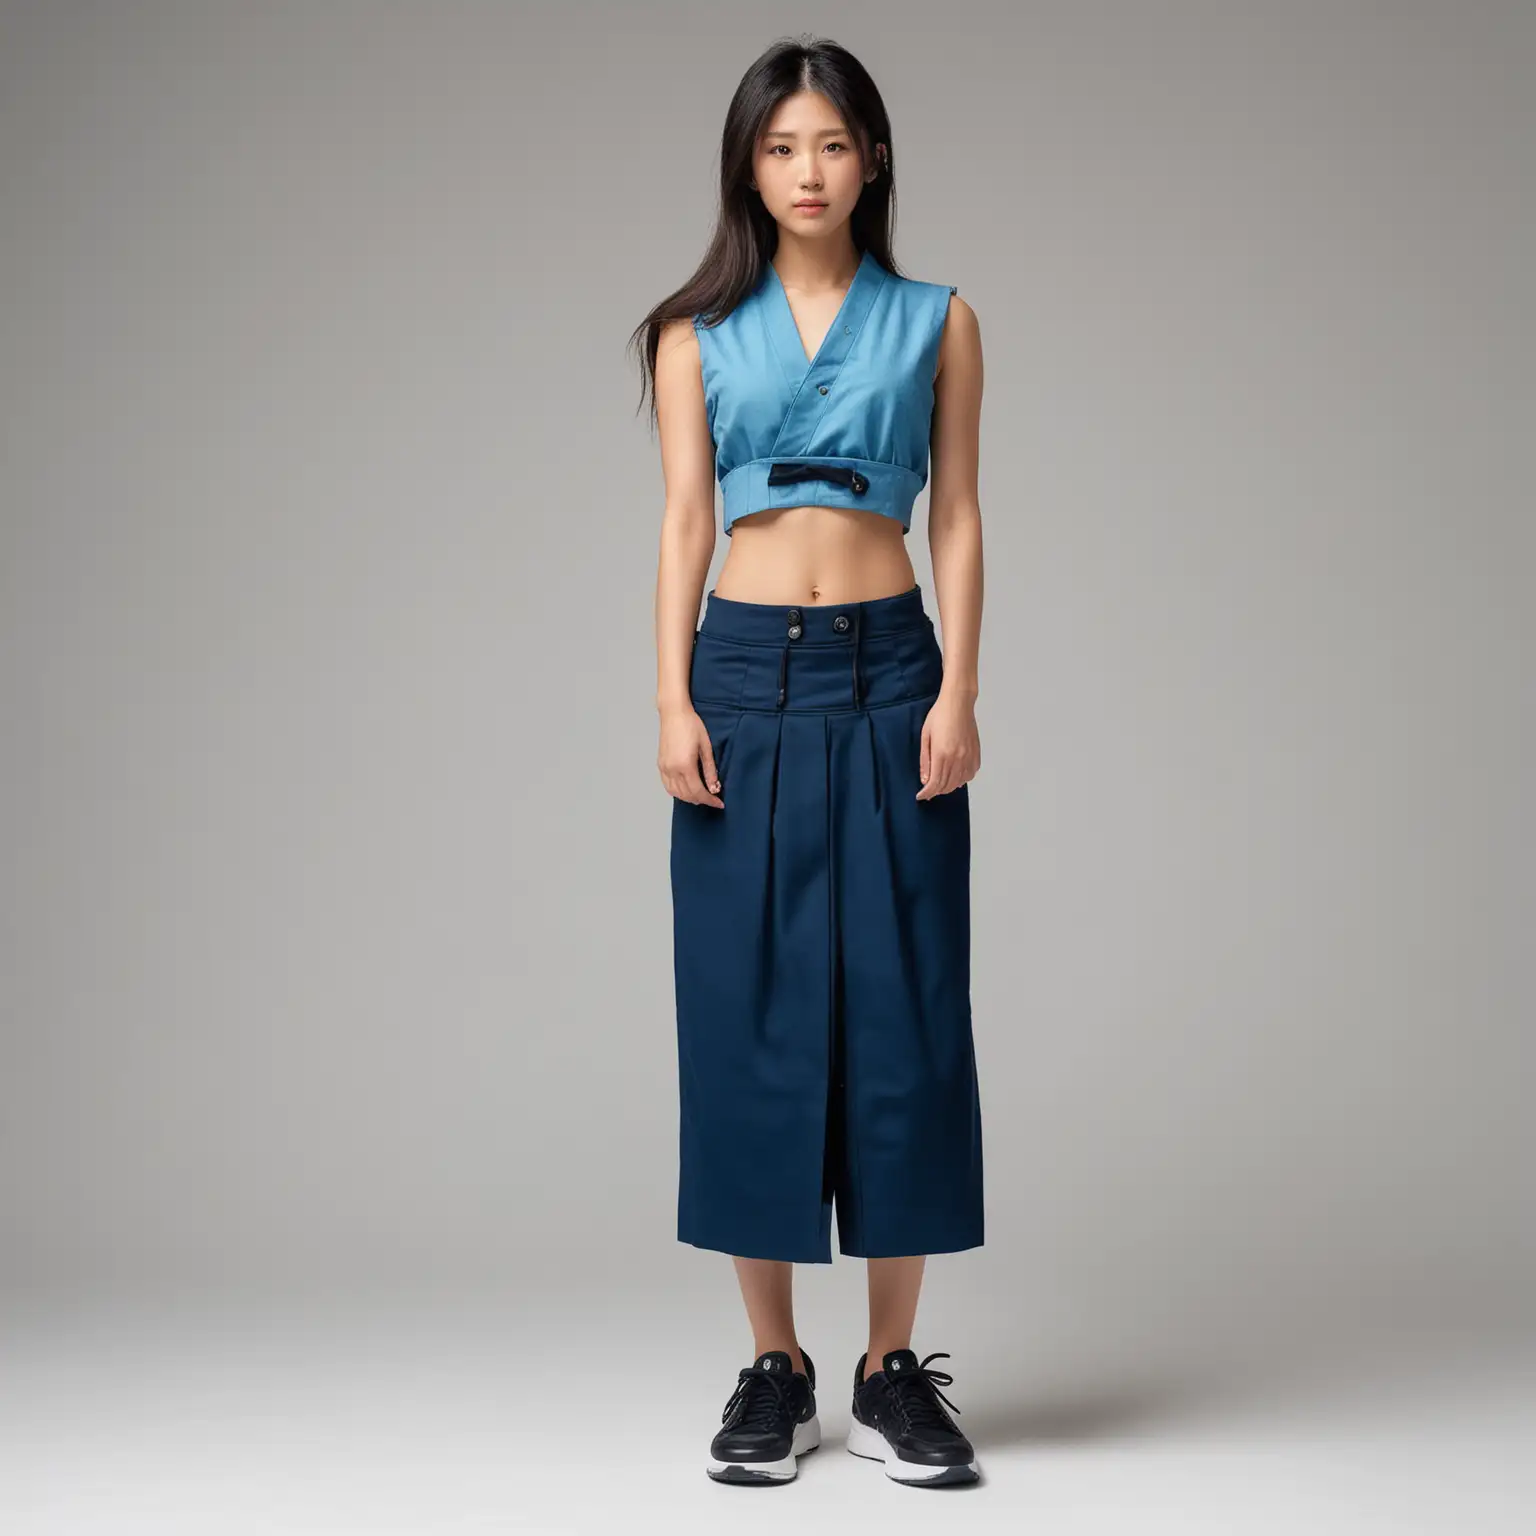 Elegant Japanese Supermodel in Azure Vest and Hakama Skirt